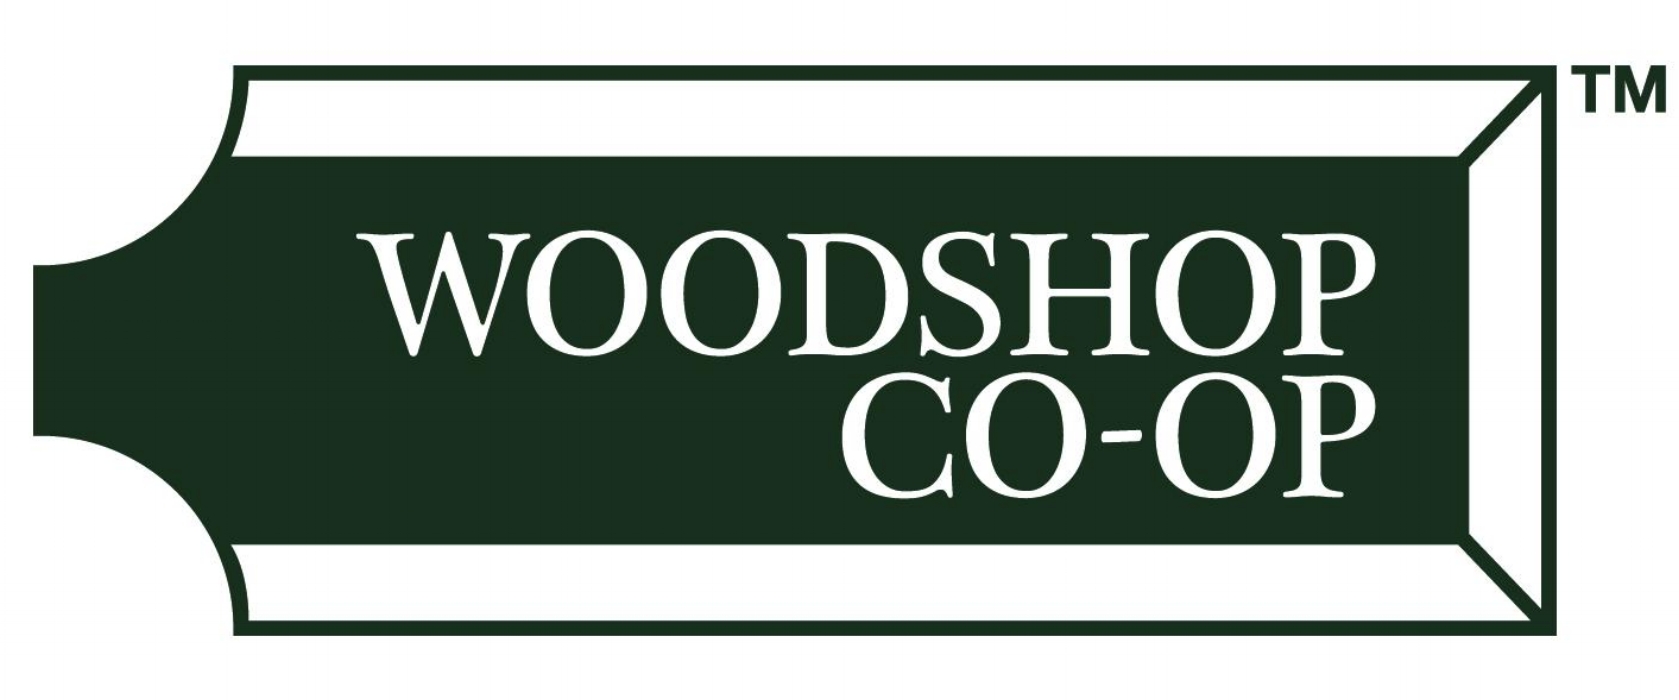 Woodshop Co-Op